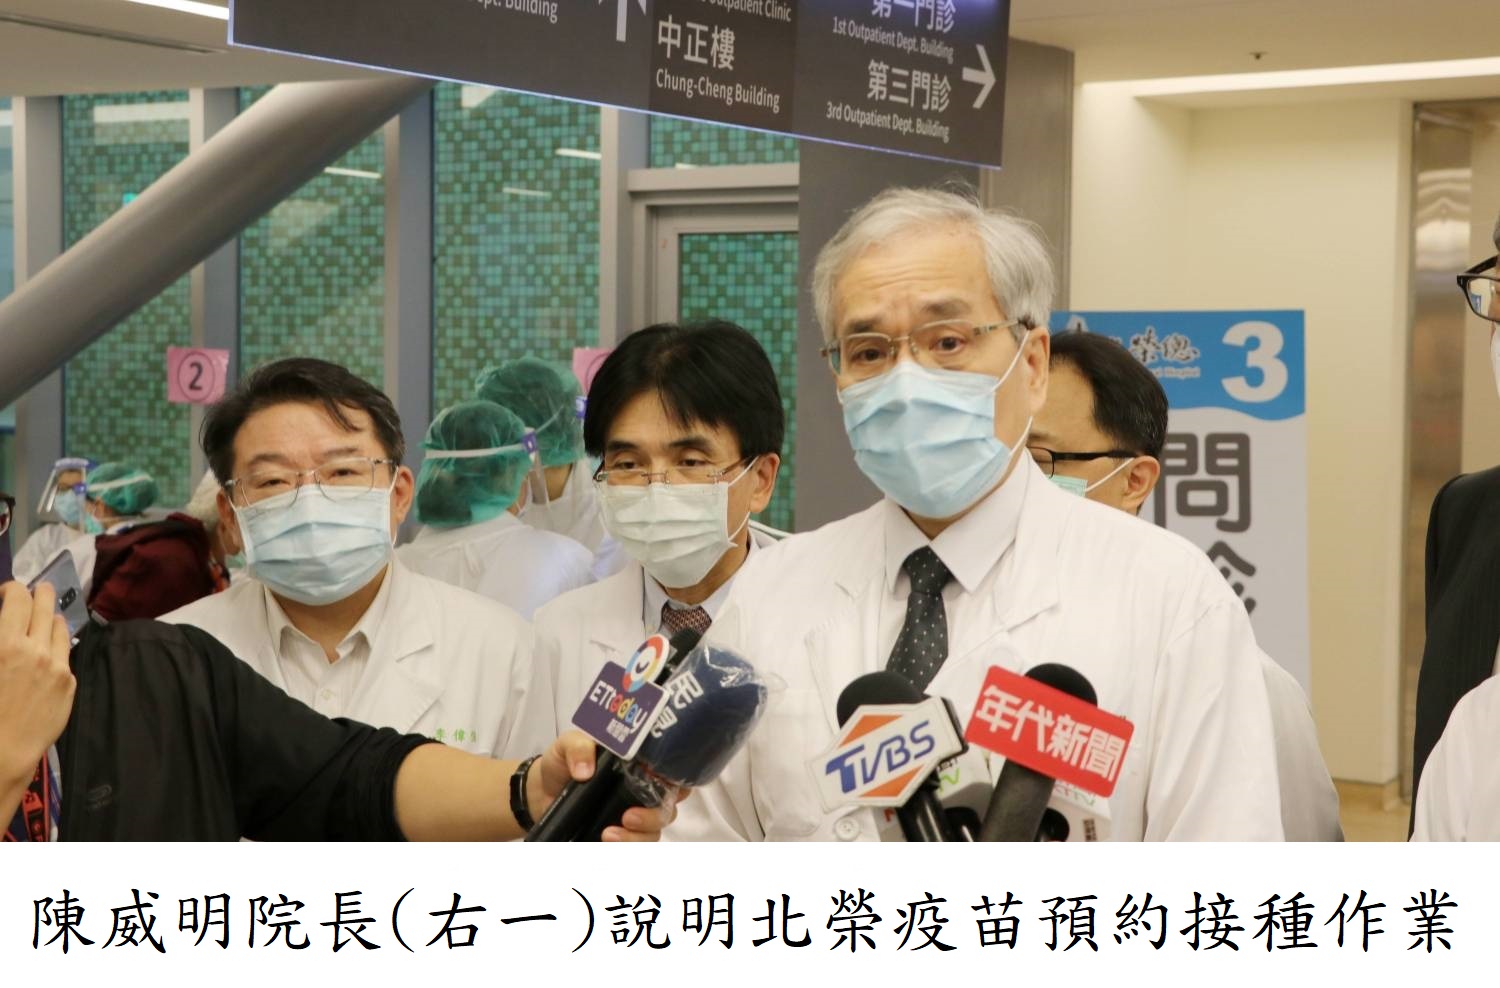 陳威明院長(右一)說明北榮疫苗預約接種作業